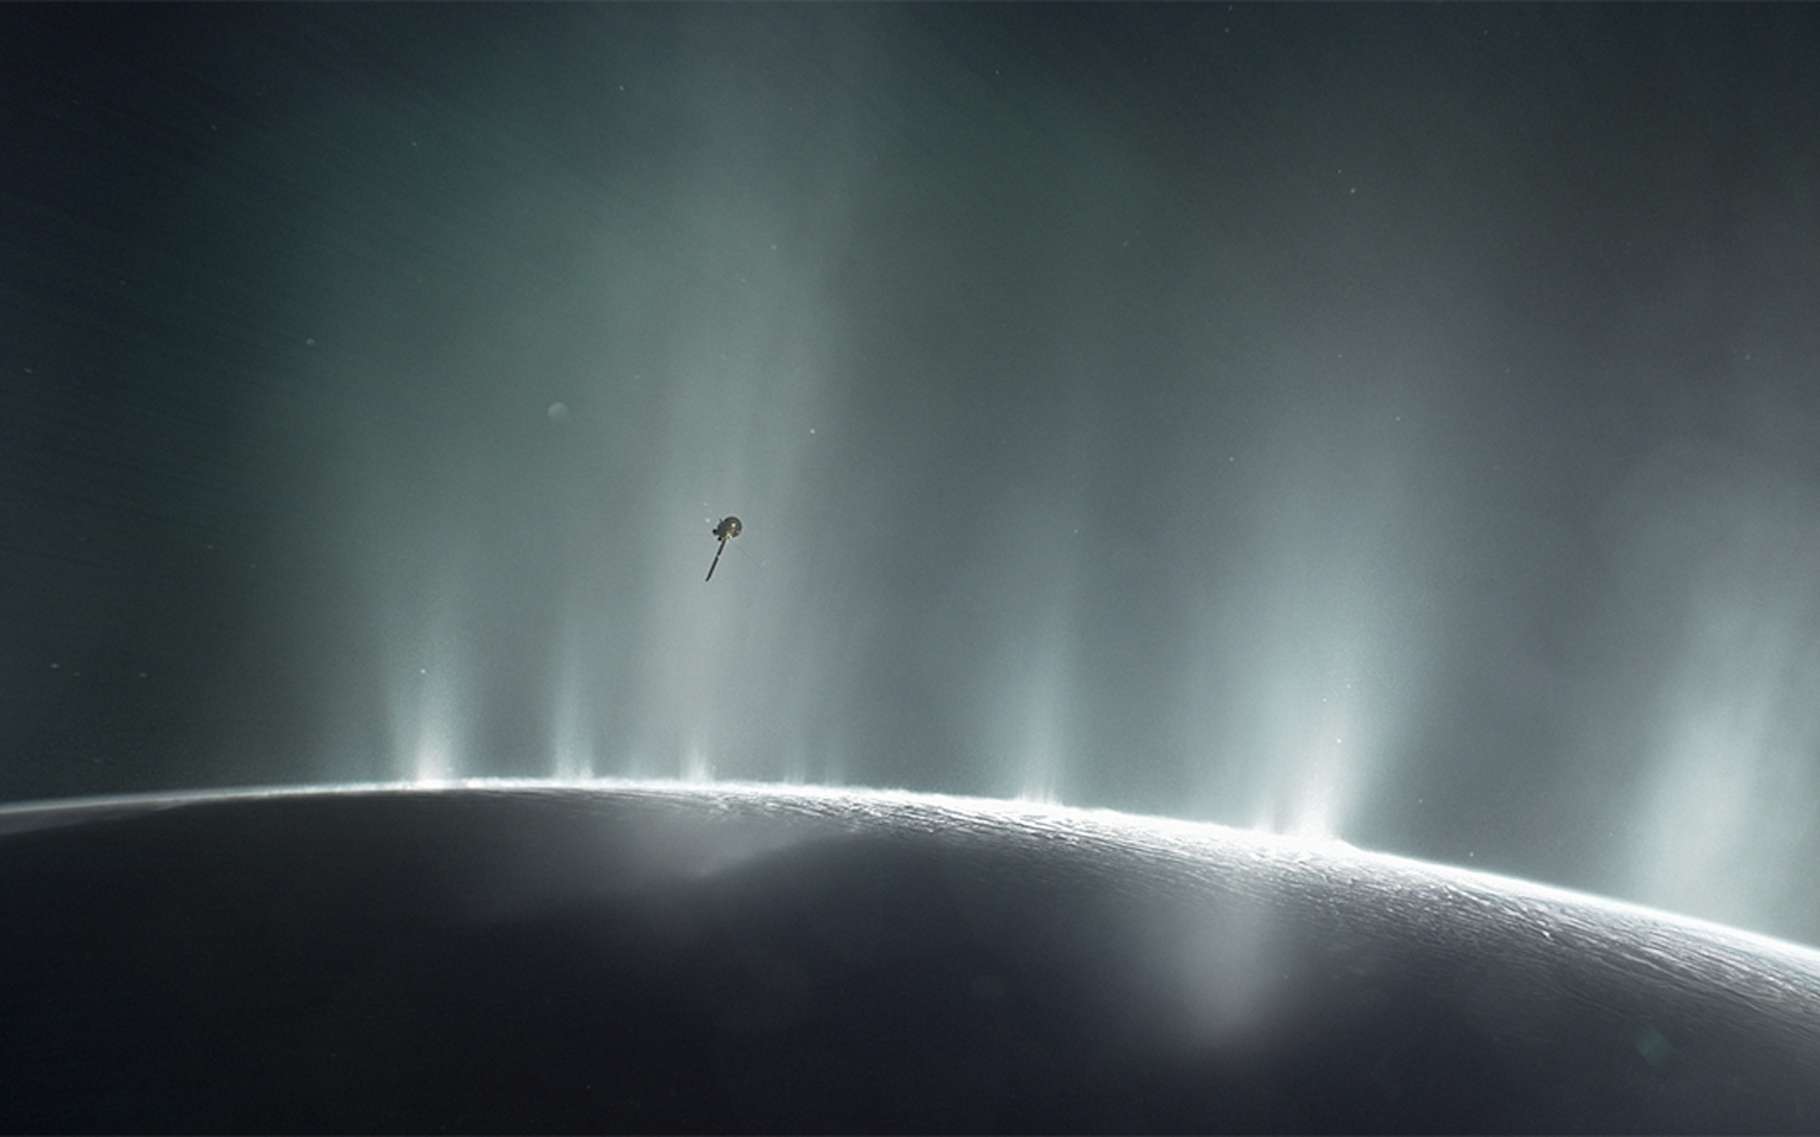 Une sonde spatiale pourrait révéler si la vie existe dans l'océan de cette lune de Saturne